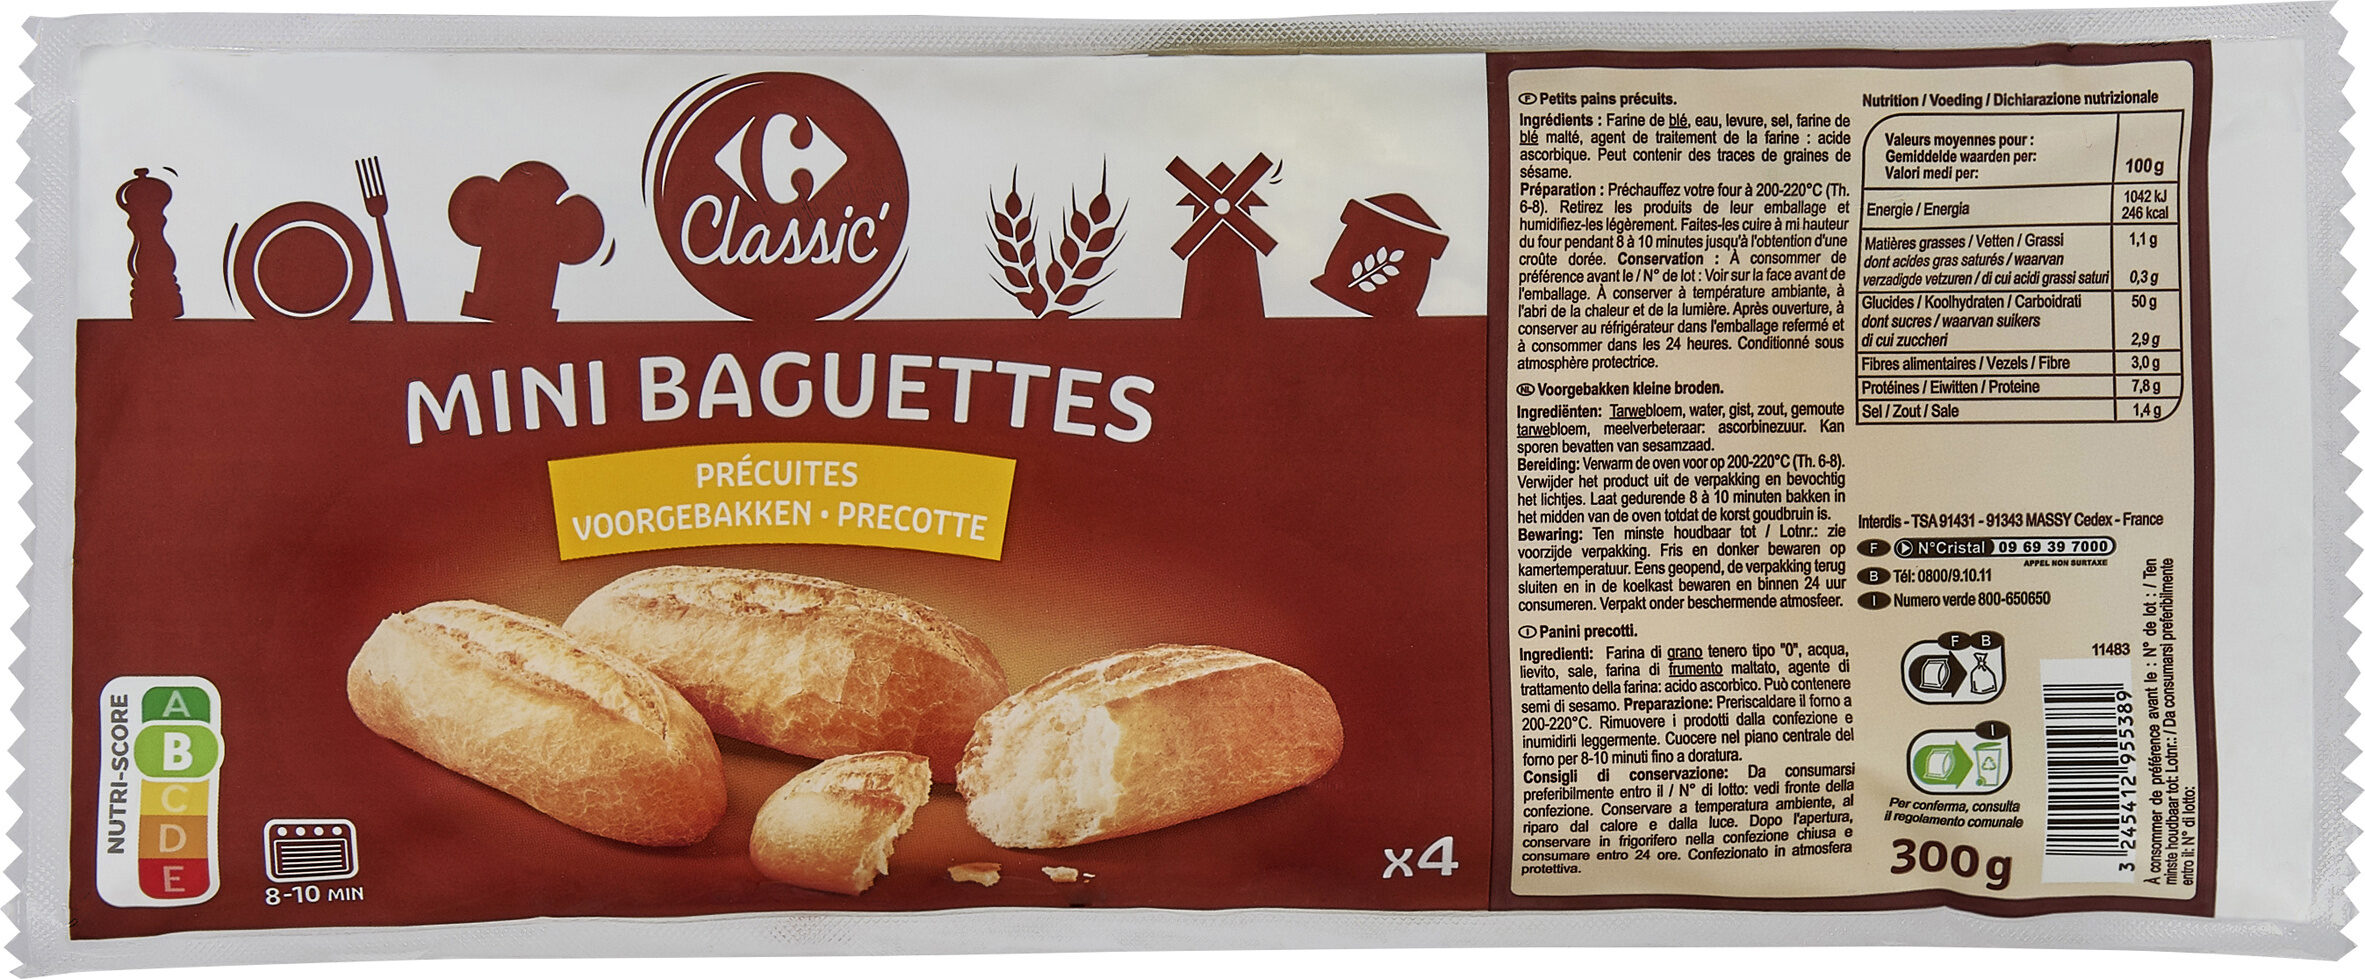 Mini baguettes - Prodotto - fr